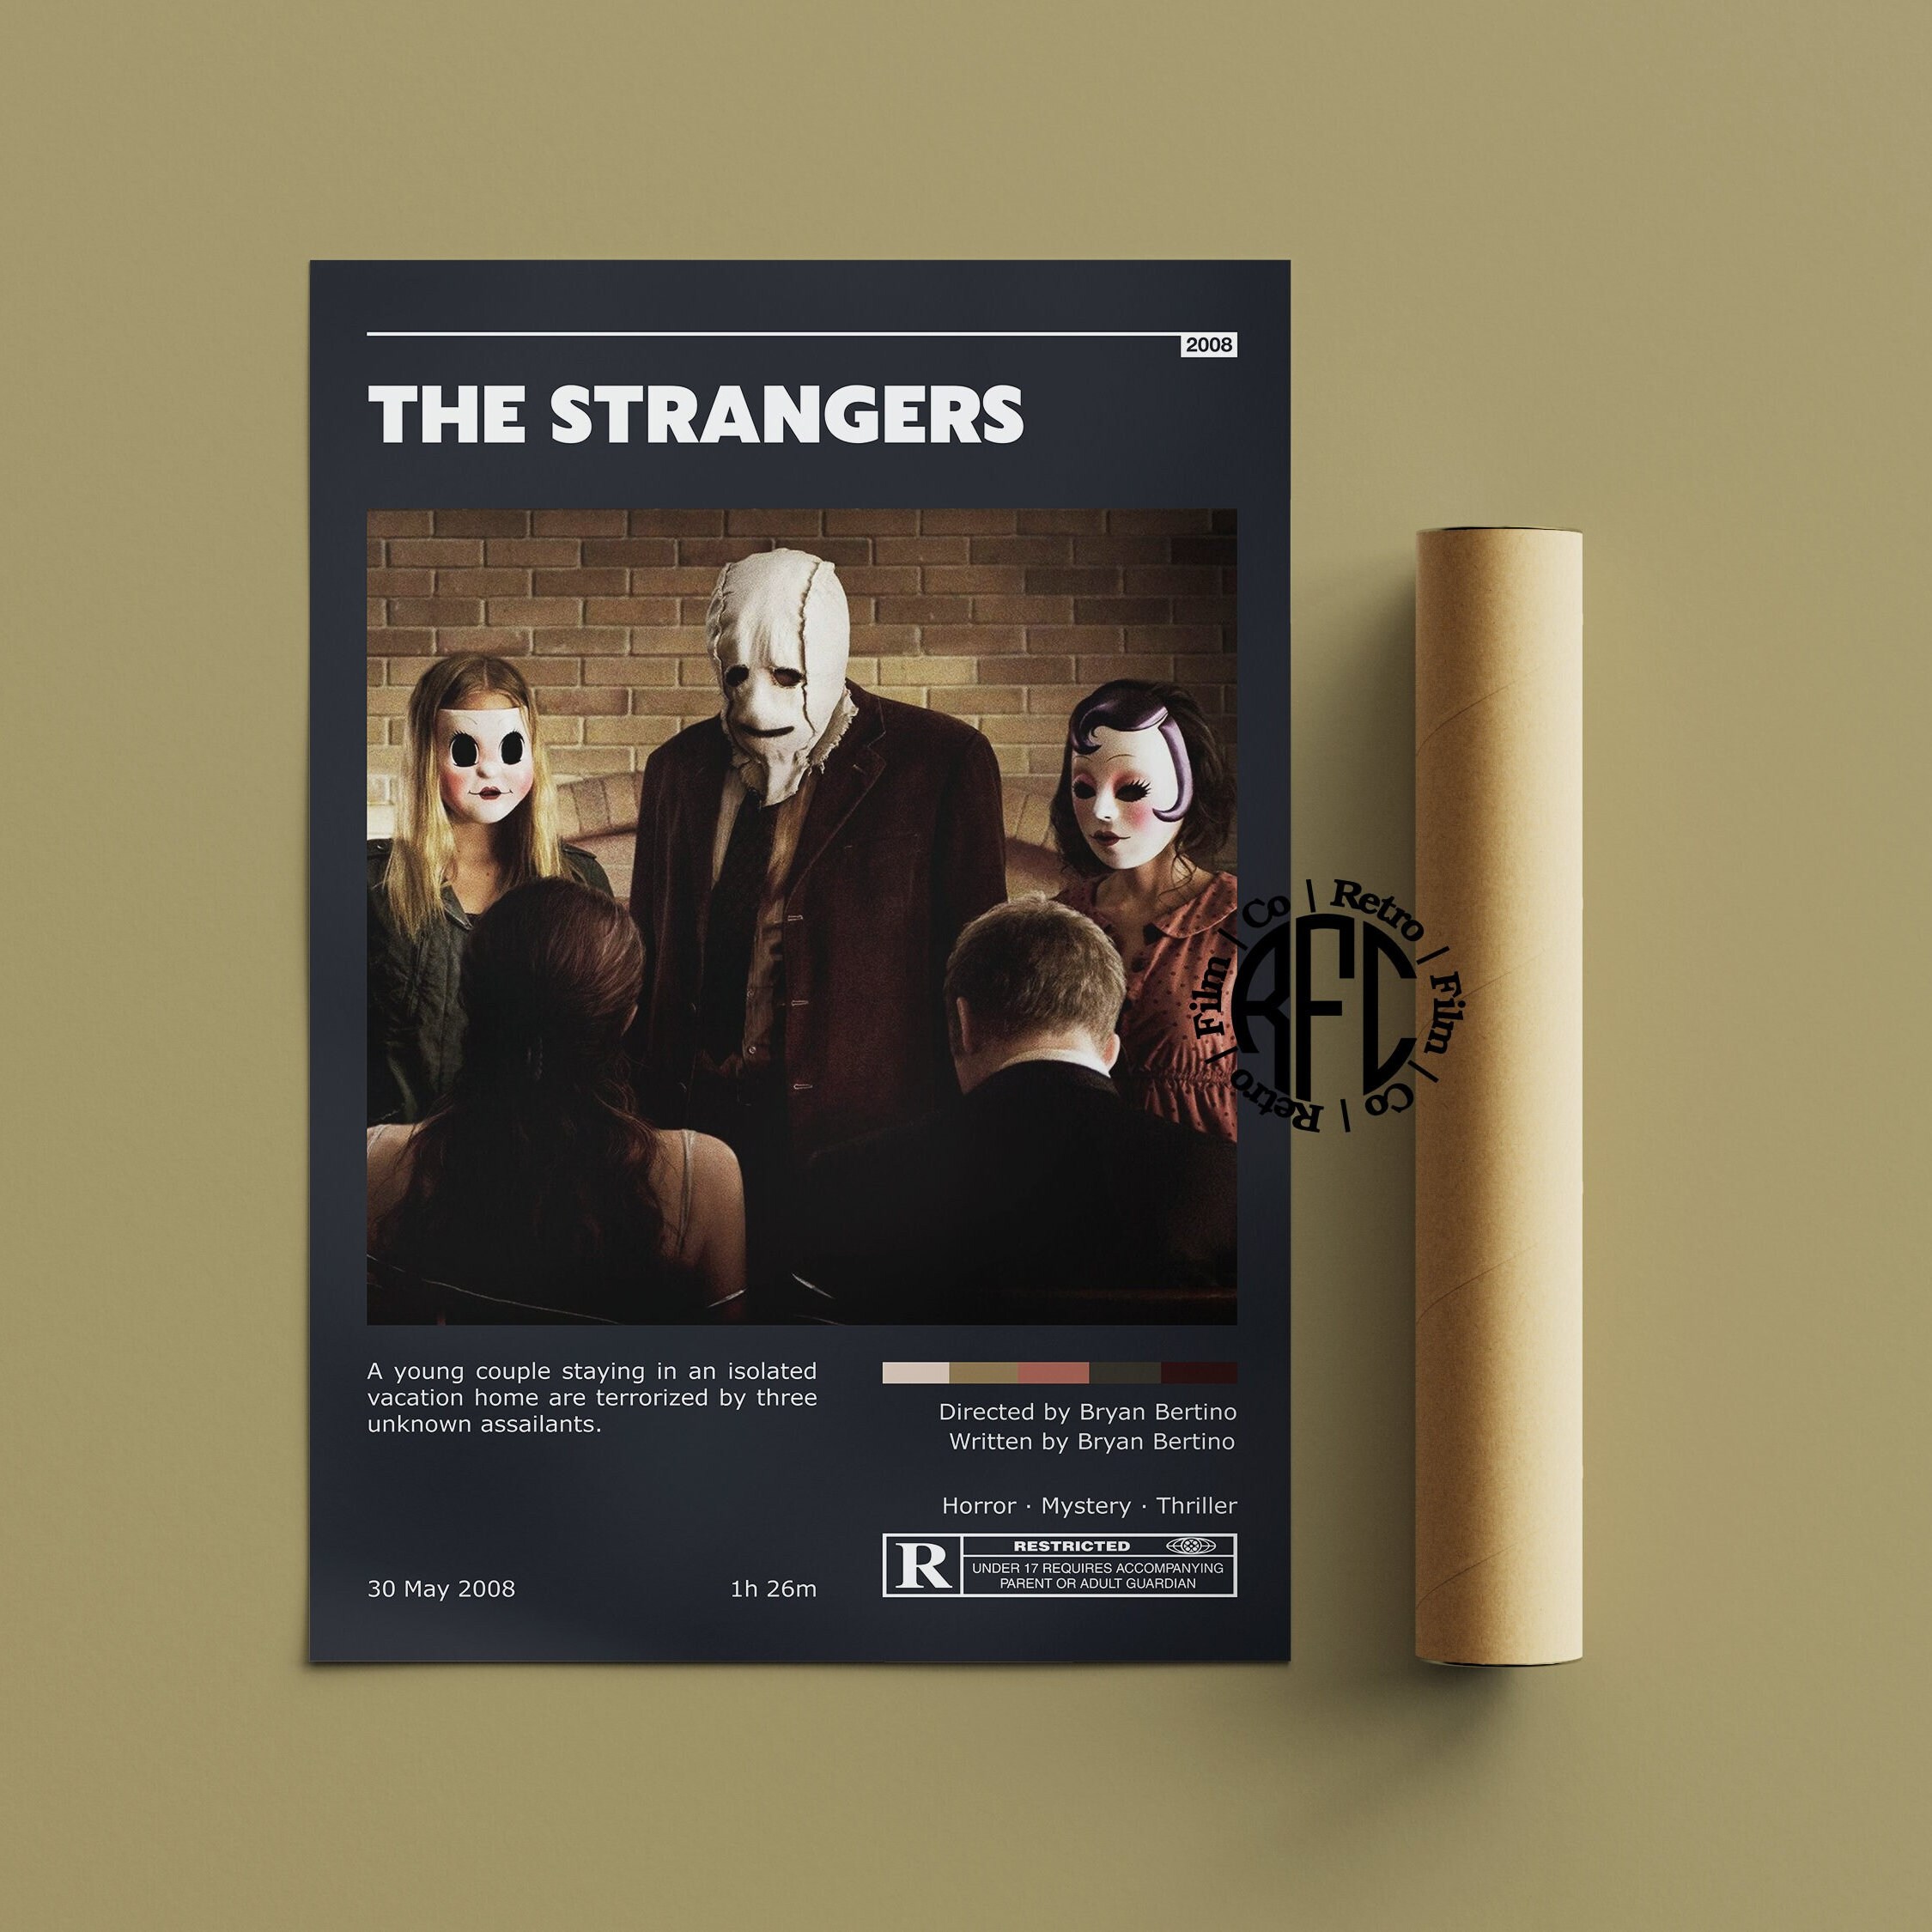 The Strangers (2023) - Poster, Nrib_design